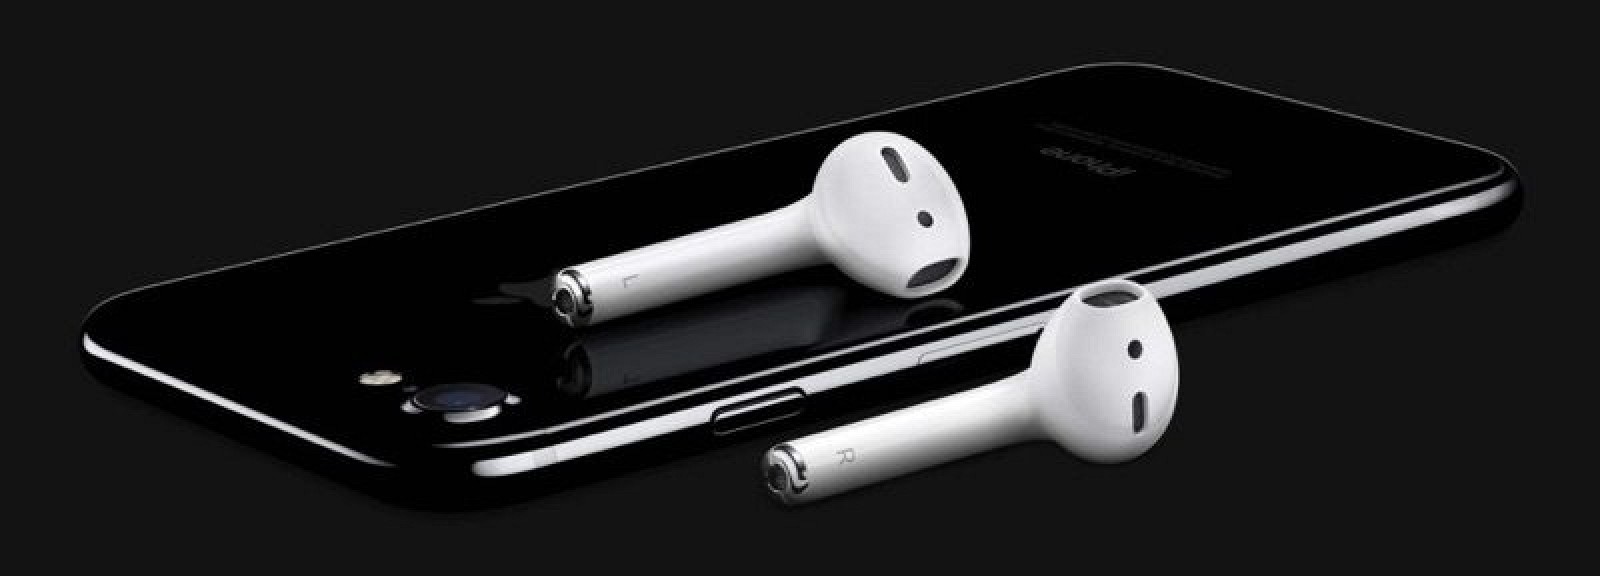 Apple presenta i nuovi iPhone 7 e iPhone 7 Plus: ecco tutte le novità! [FOTO + VIDEO]